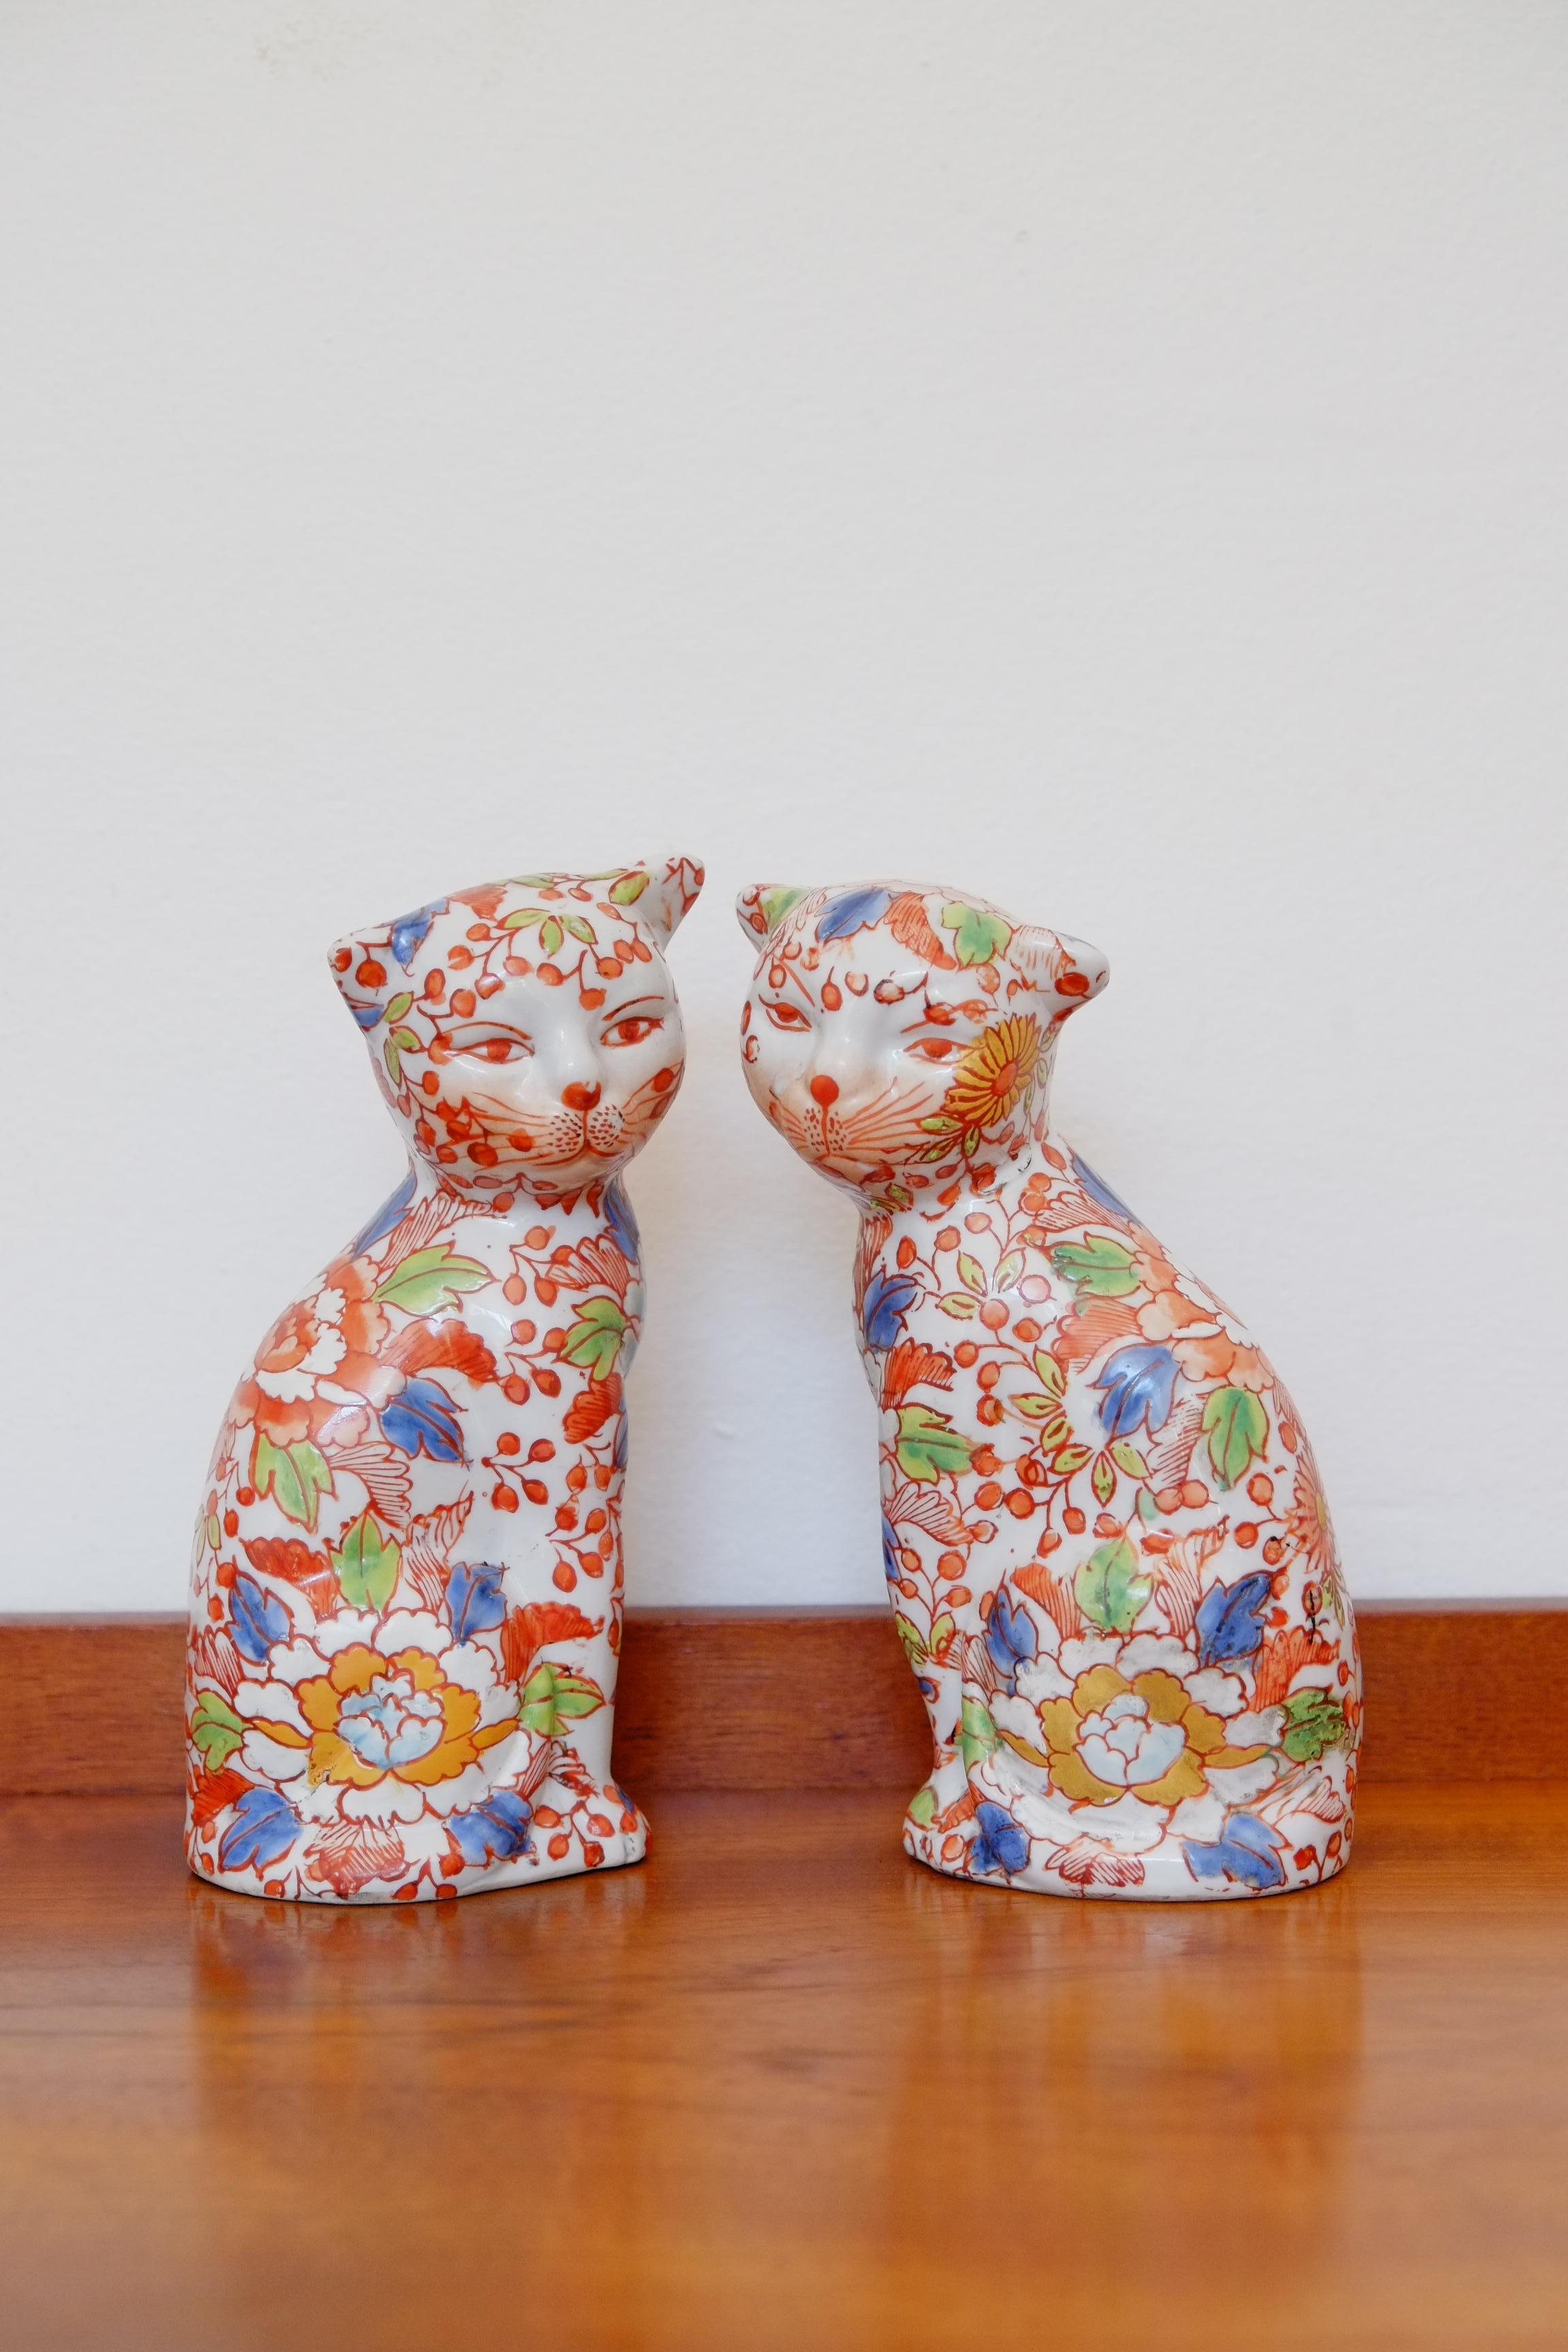 Ein schönes Paar Katzen aus Imari-Porzellan. Sie stammt aus Japan und wurde in den 1920er Jahren hergestellt. 

Dieses Katzenpaar hat einen sehr schönen Charakter, mit leichten Unterschieden in der handgedruckten Emaille. Sie haben leicht